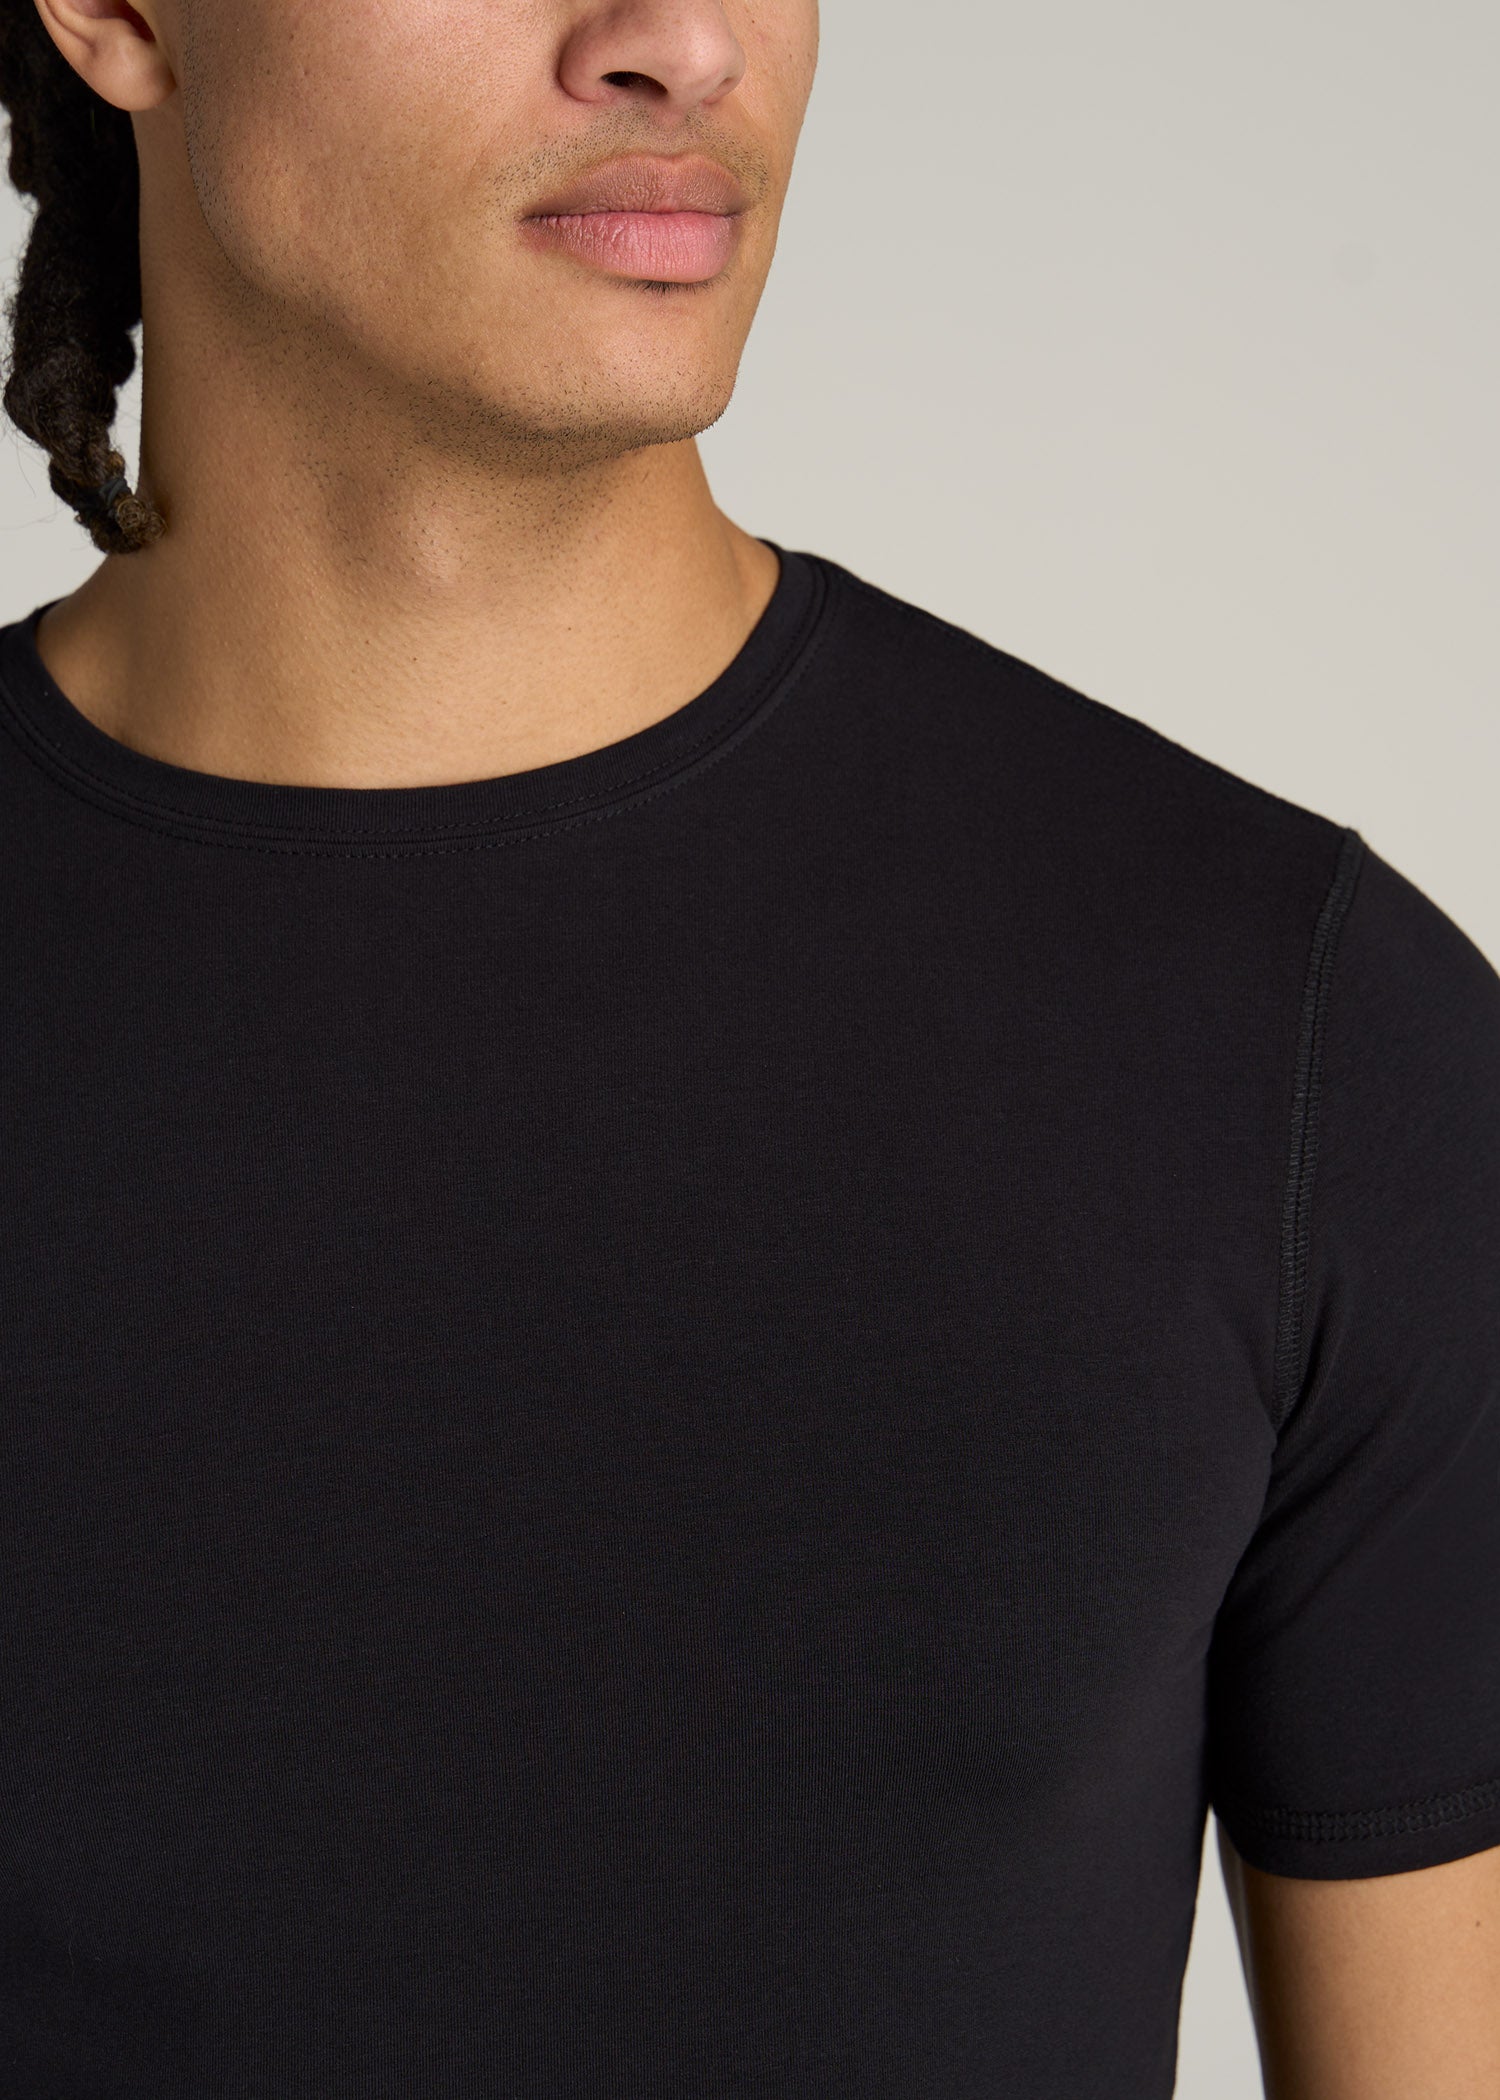 Slim Fit Black T-Shirt | Tall Men's Essentials | American